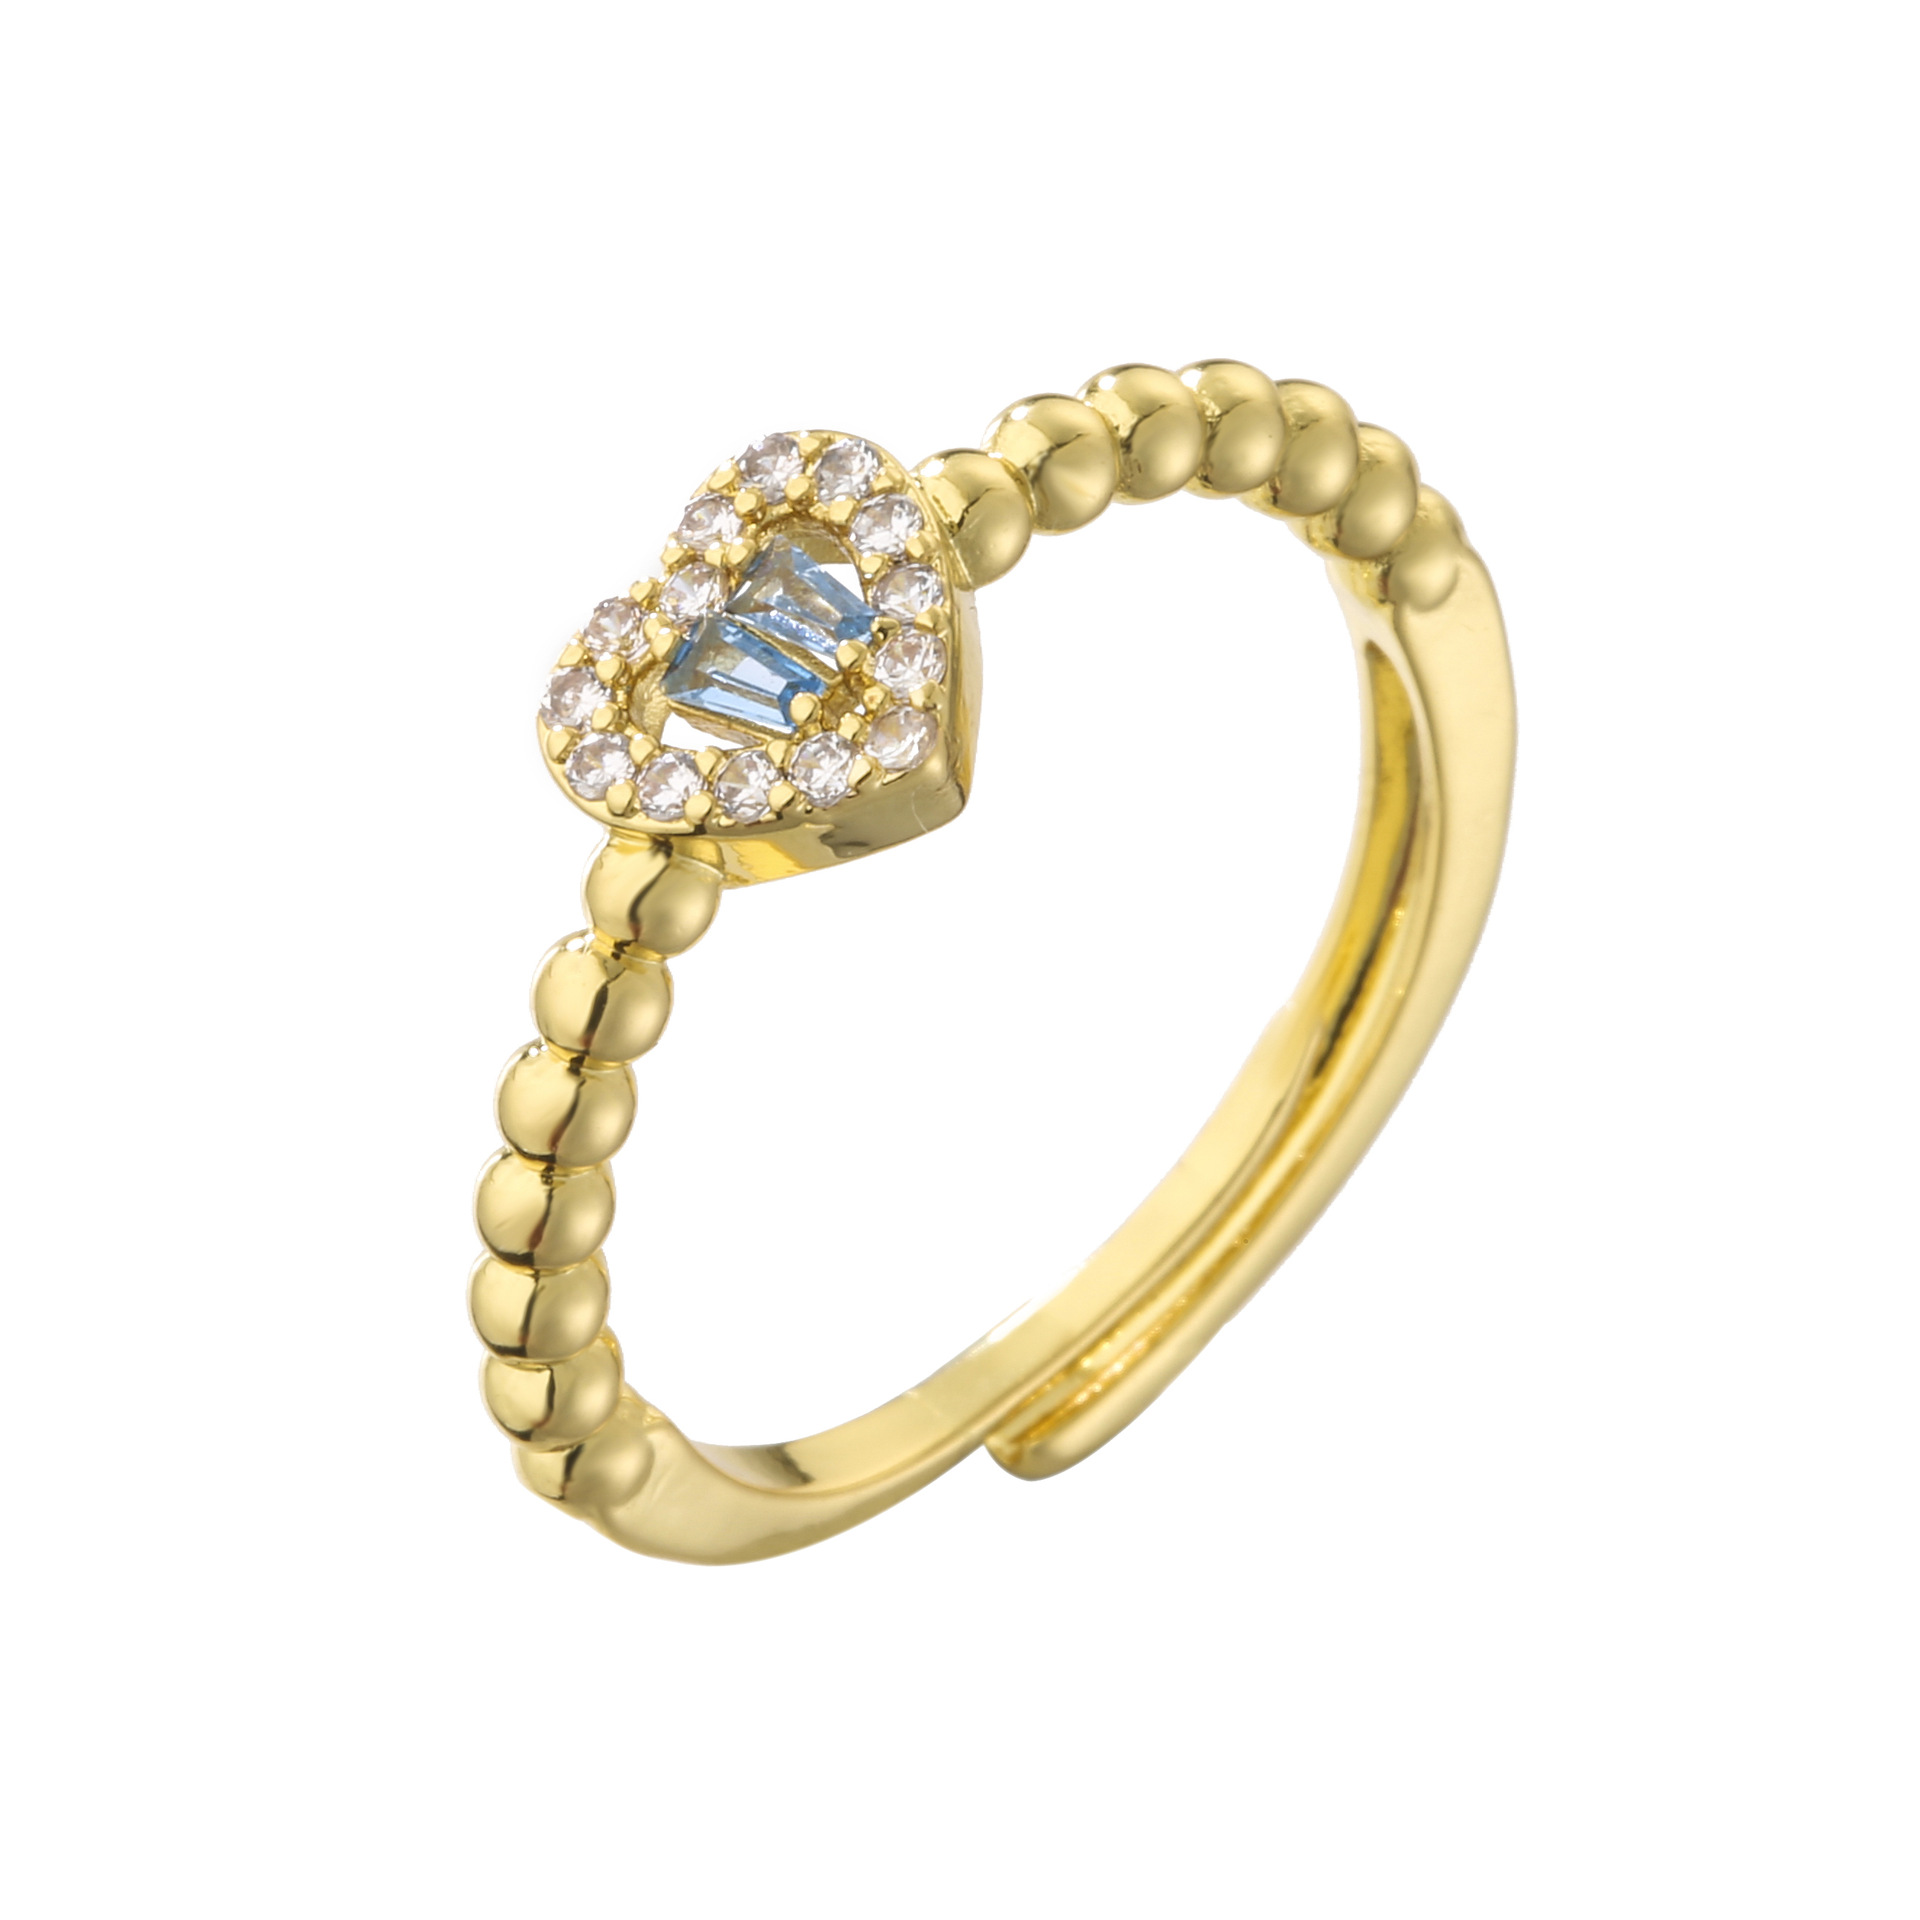 2:Gold aquamarine diamond